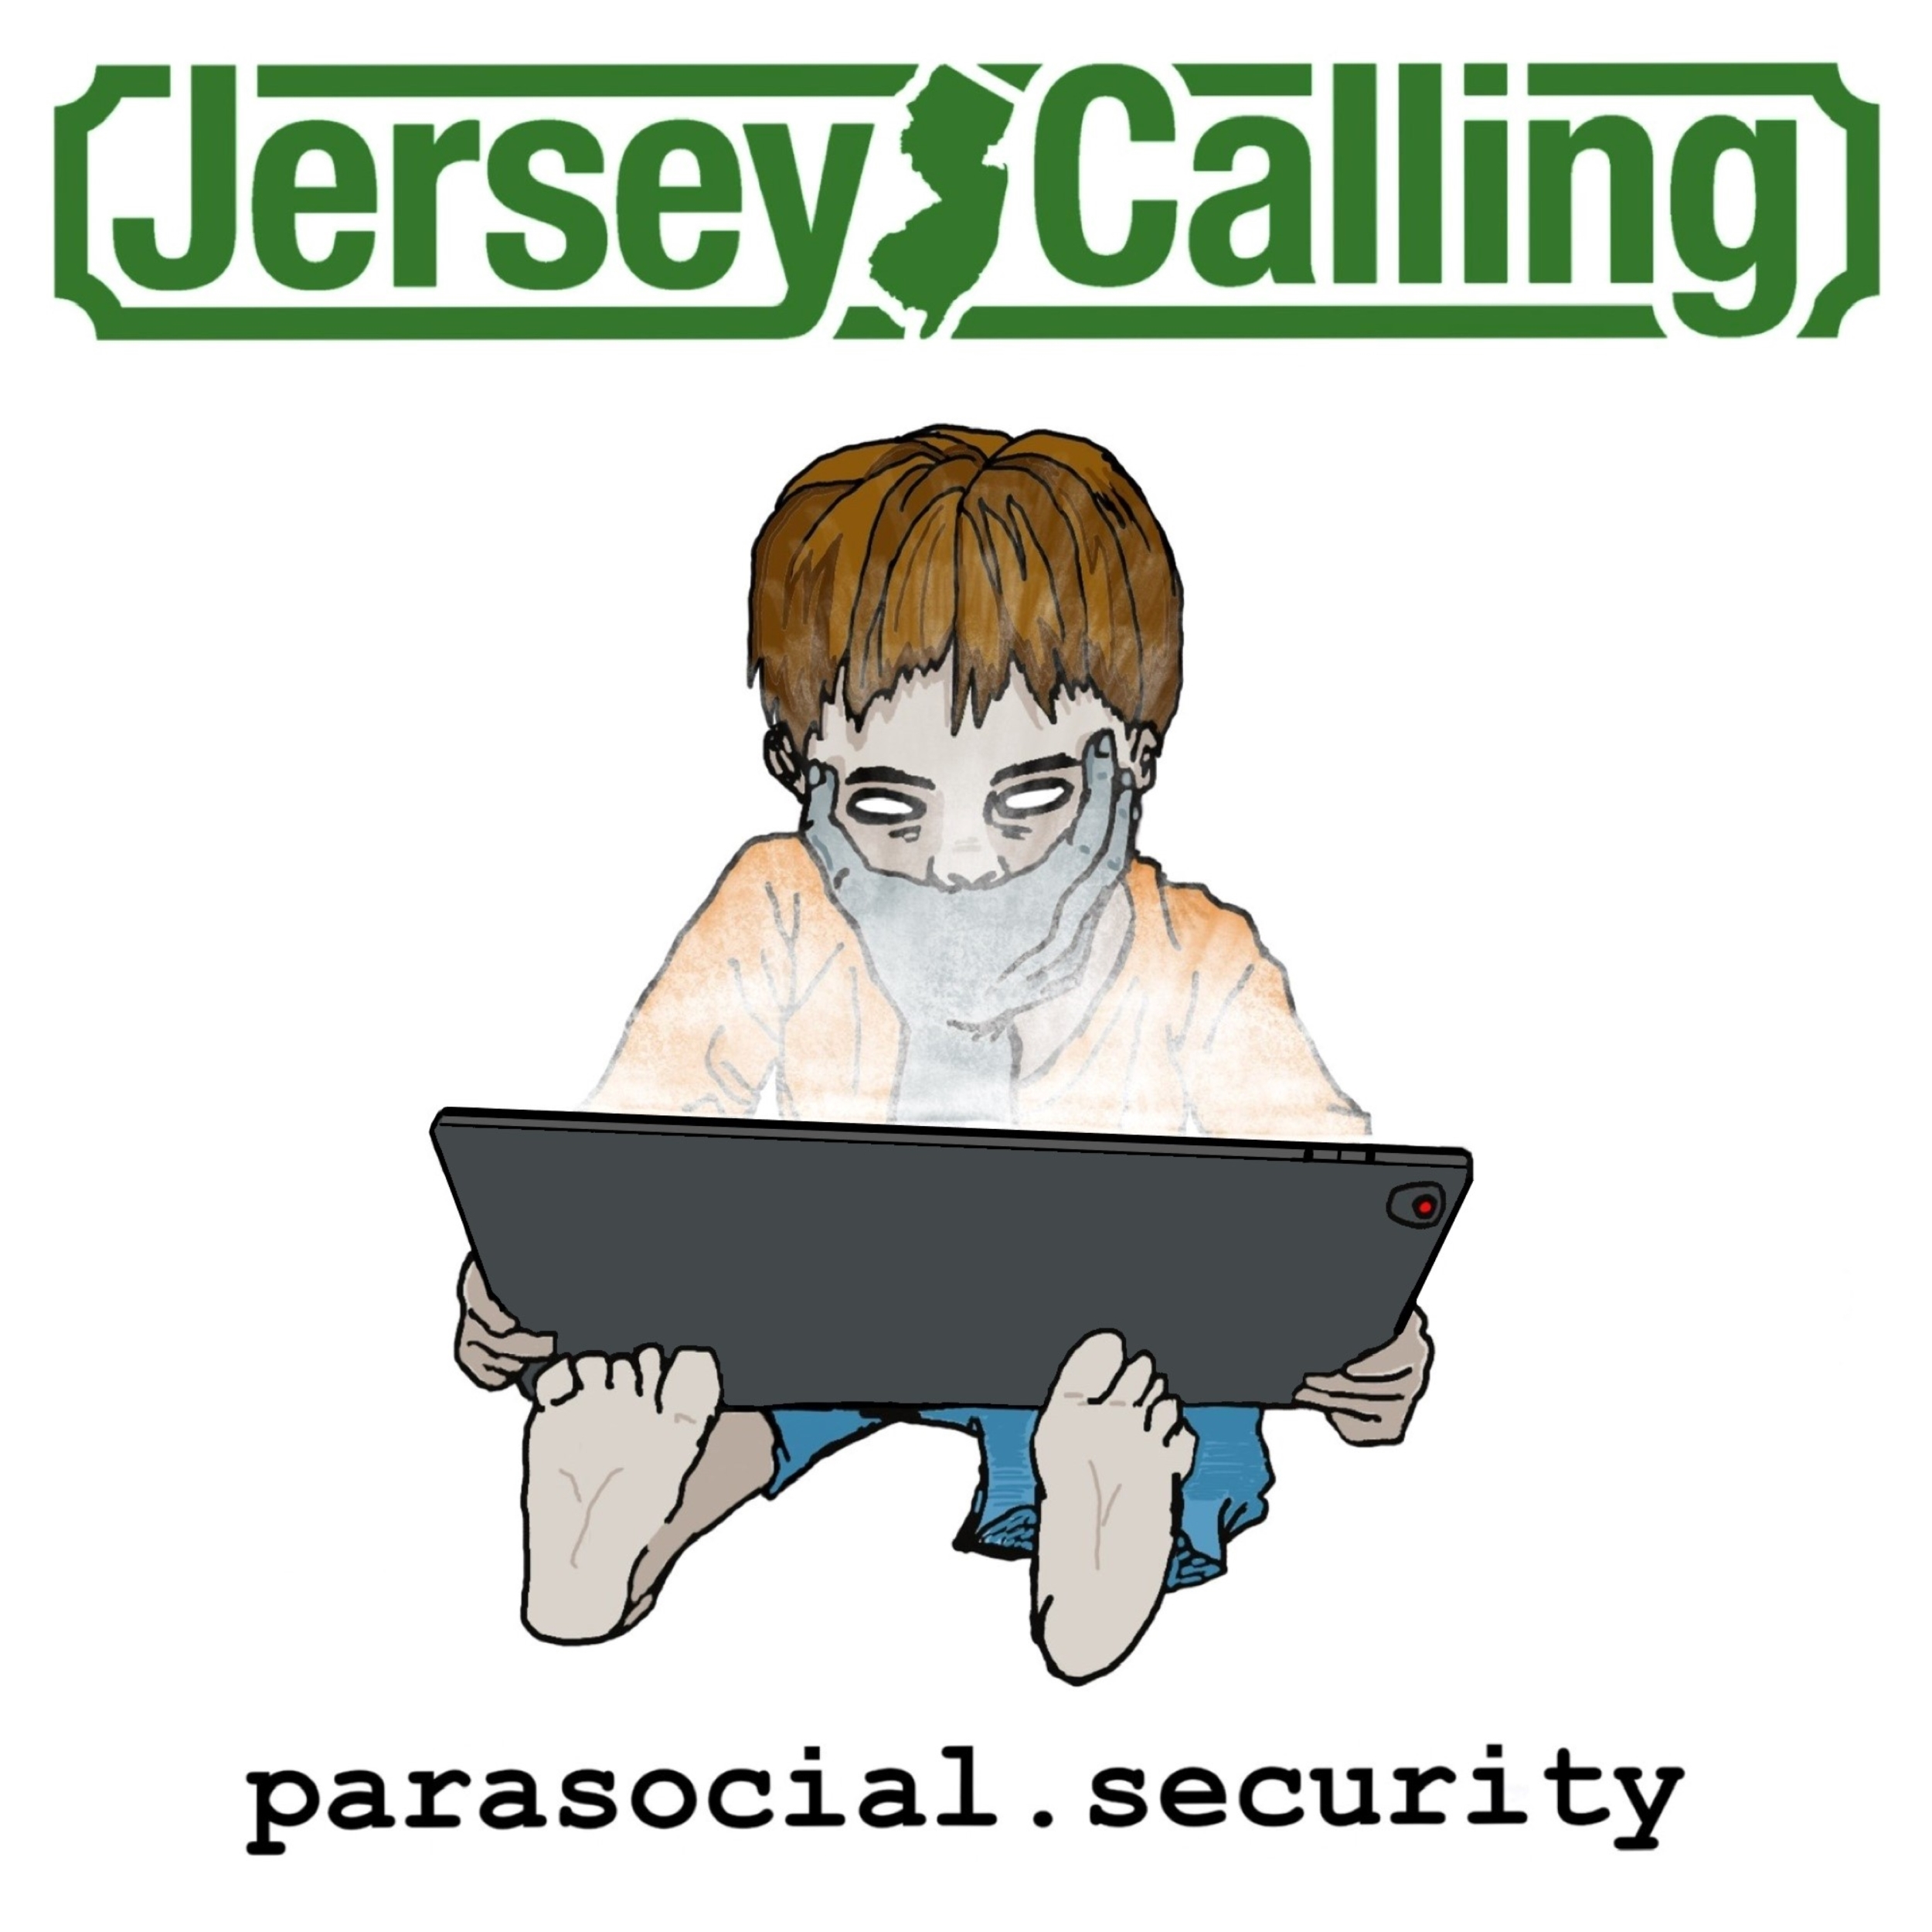 Jersey Calling – Parasocial Security